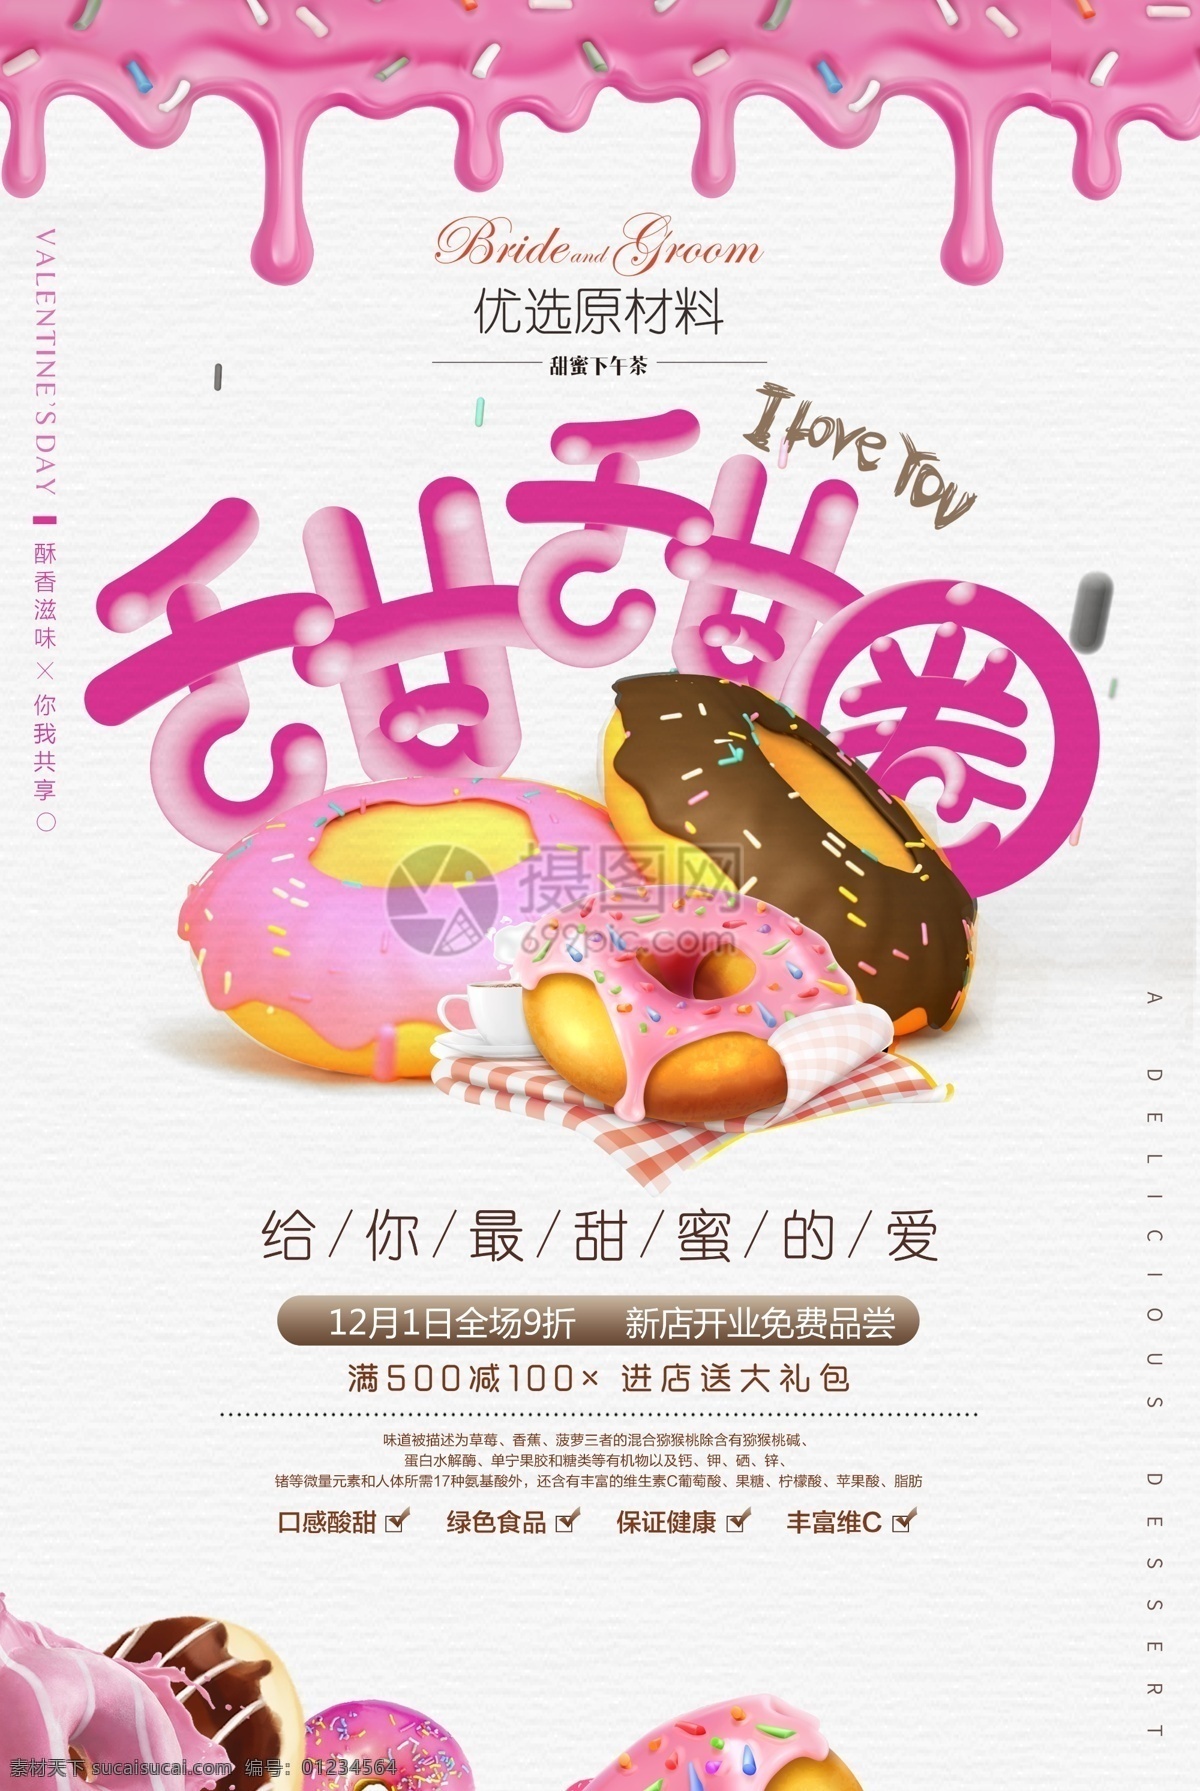 粉色 甜蜜 甜甜 圈 美食 海报 甜蜜时光 蛋糕 甜品 食品 美食海报 甜品海报 小清新